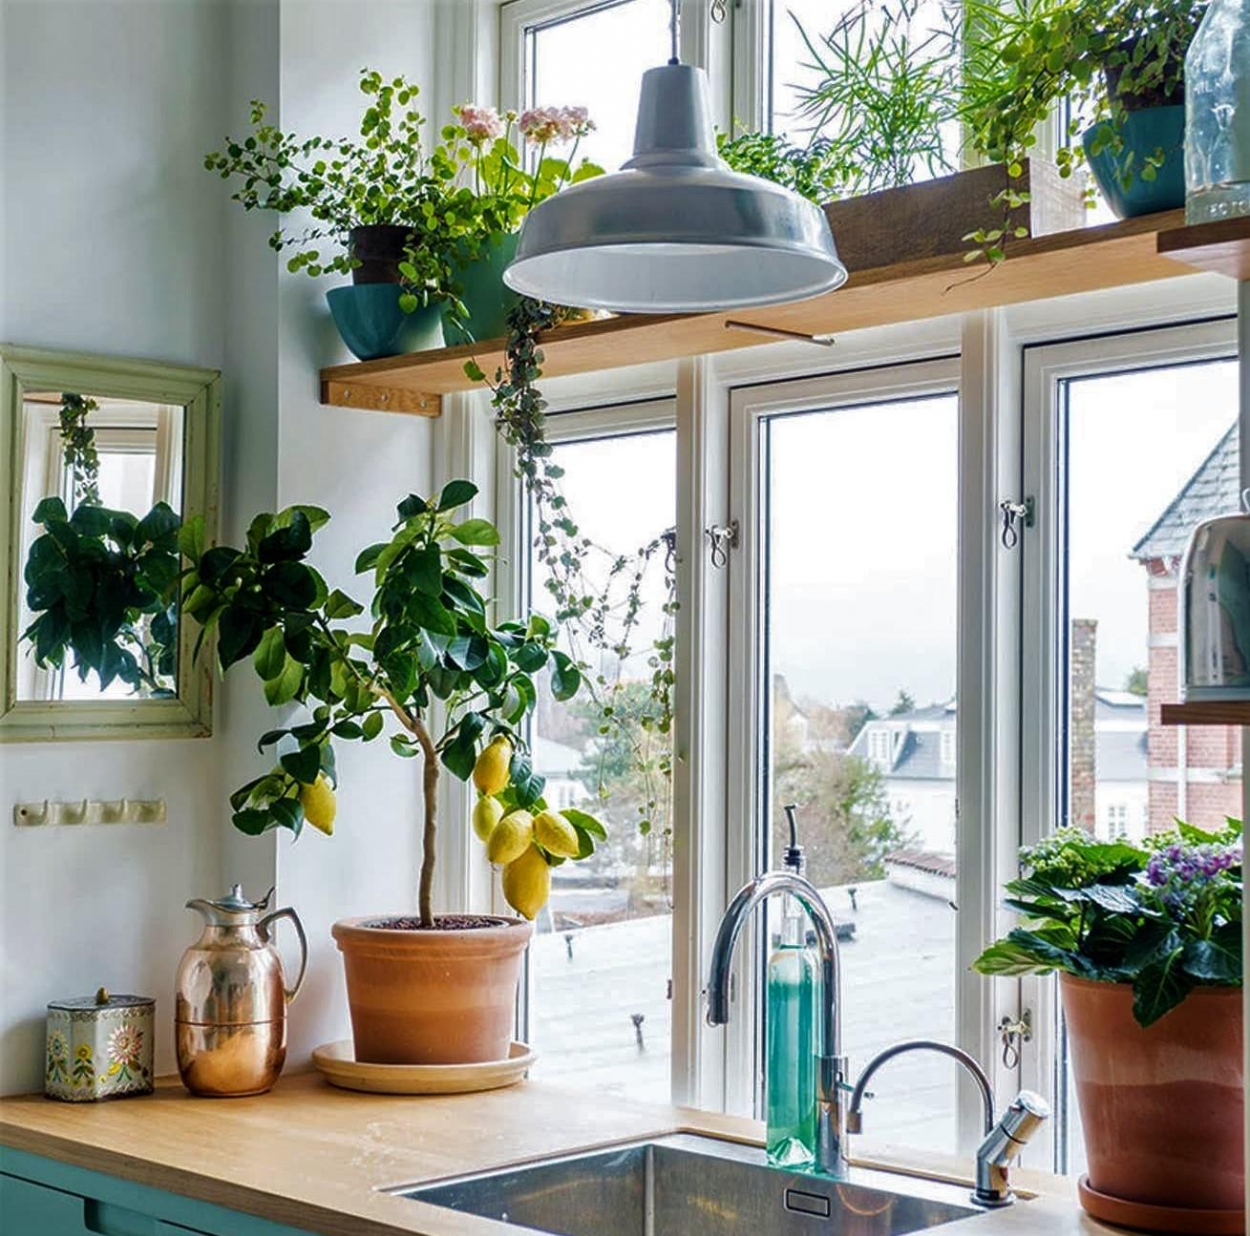 Trồng cây xanh trong nhà bếp là một cách khử mùi nhà bếp hiệu quả.